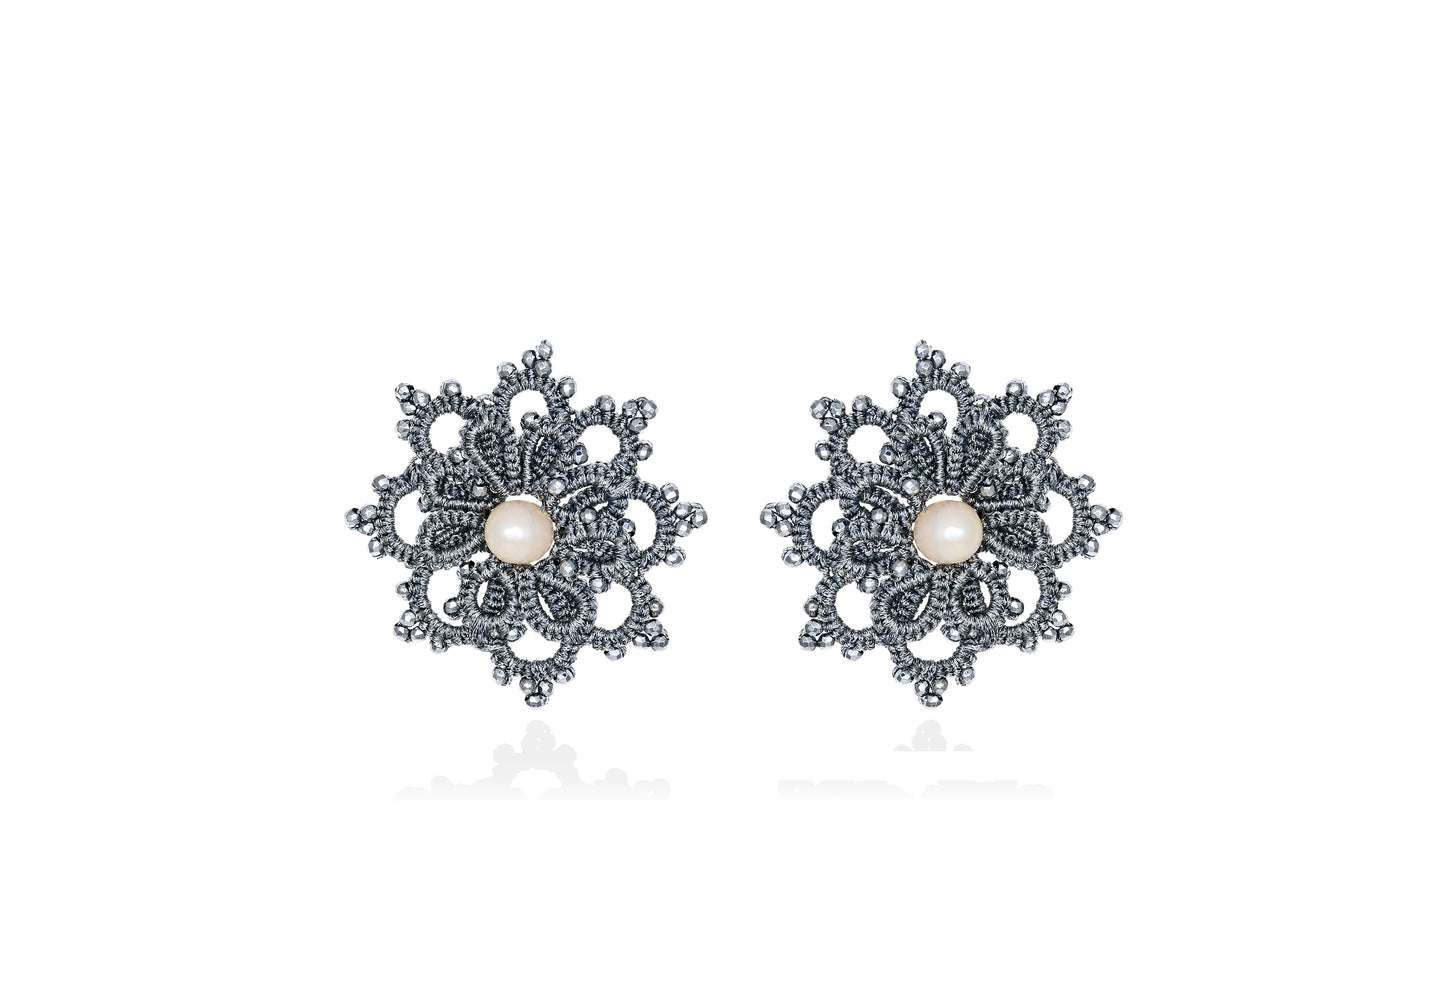 Rosette lace earrings, grey silver